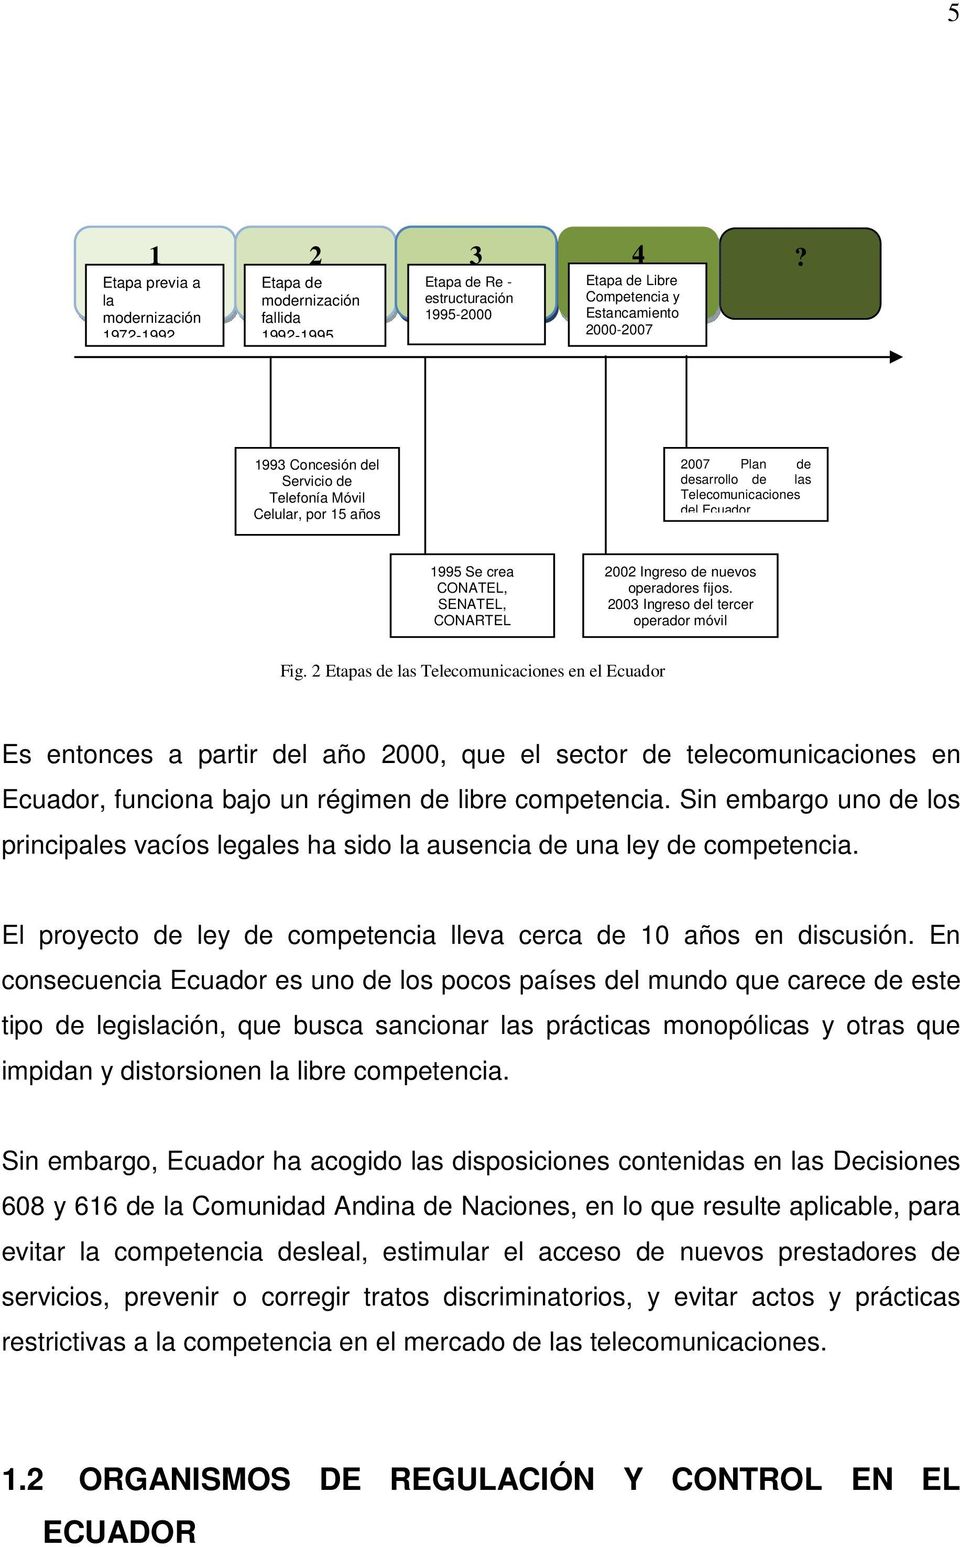 Servicio de Telefonía Móvil Celular, por 15 años 2007 Plan de desarrollo de las Telecomunicaciones del Ecuador 1995 Se crea CONATEL, SENATEL, CONARTEL 2002 Ingreso de nuevos operadores fijos.